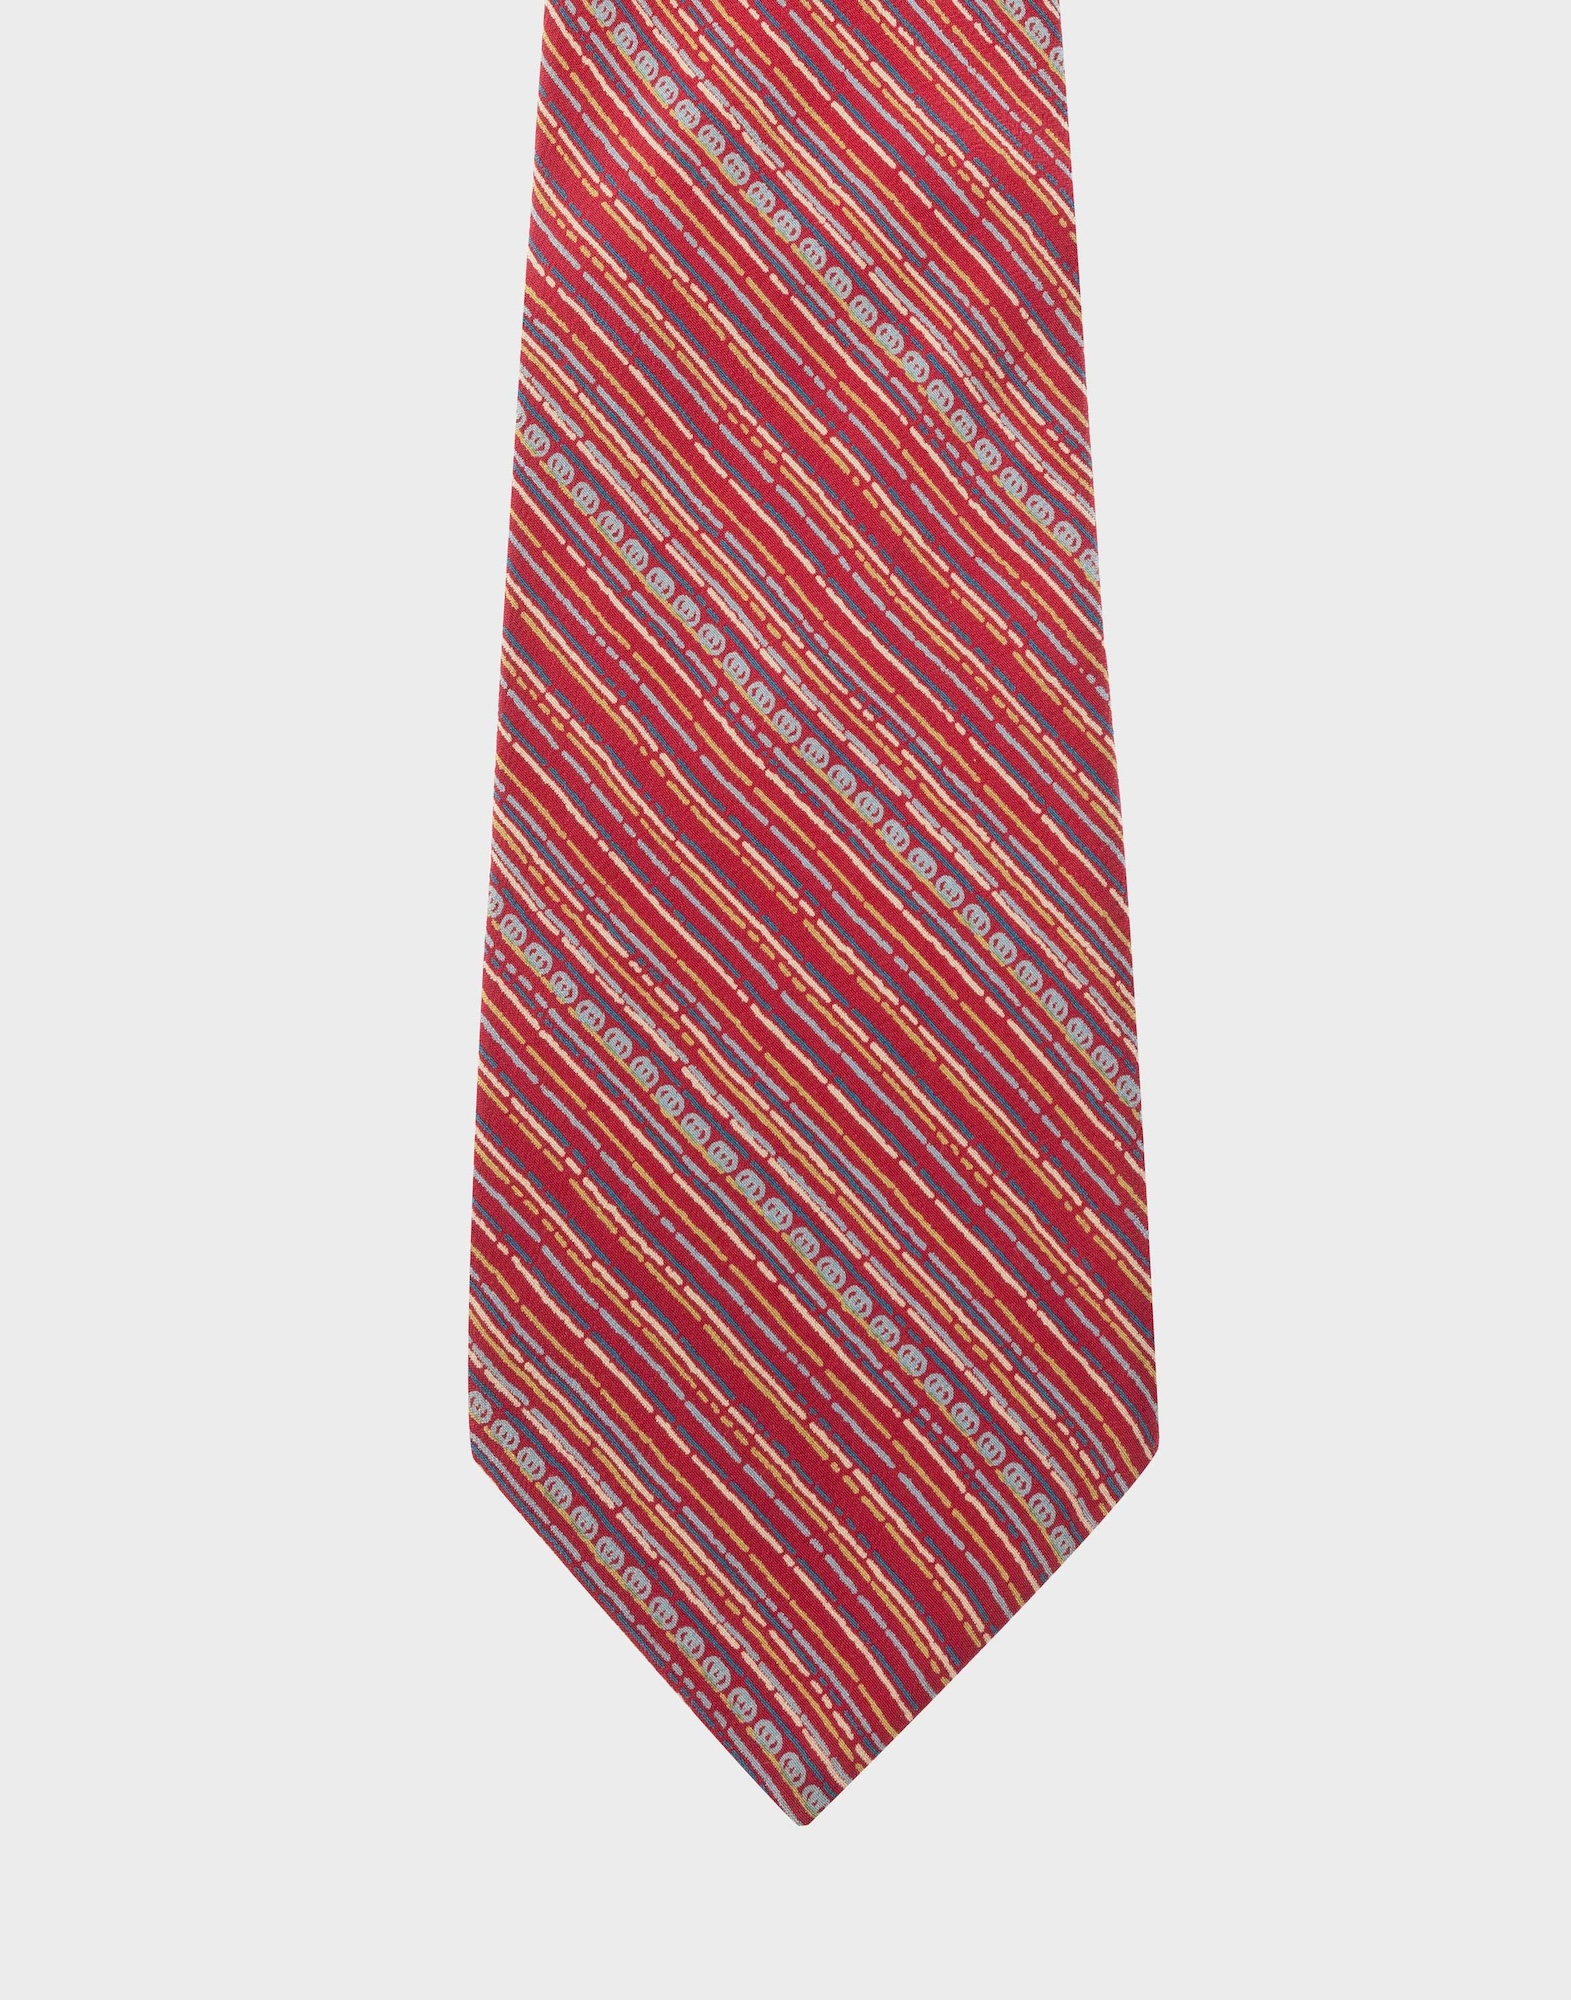 cravatta rossa in seta con fantasia a righe diagonali multicolore e logo gg